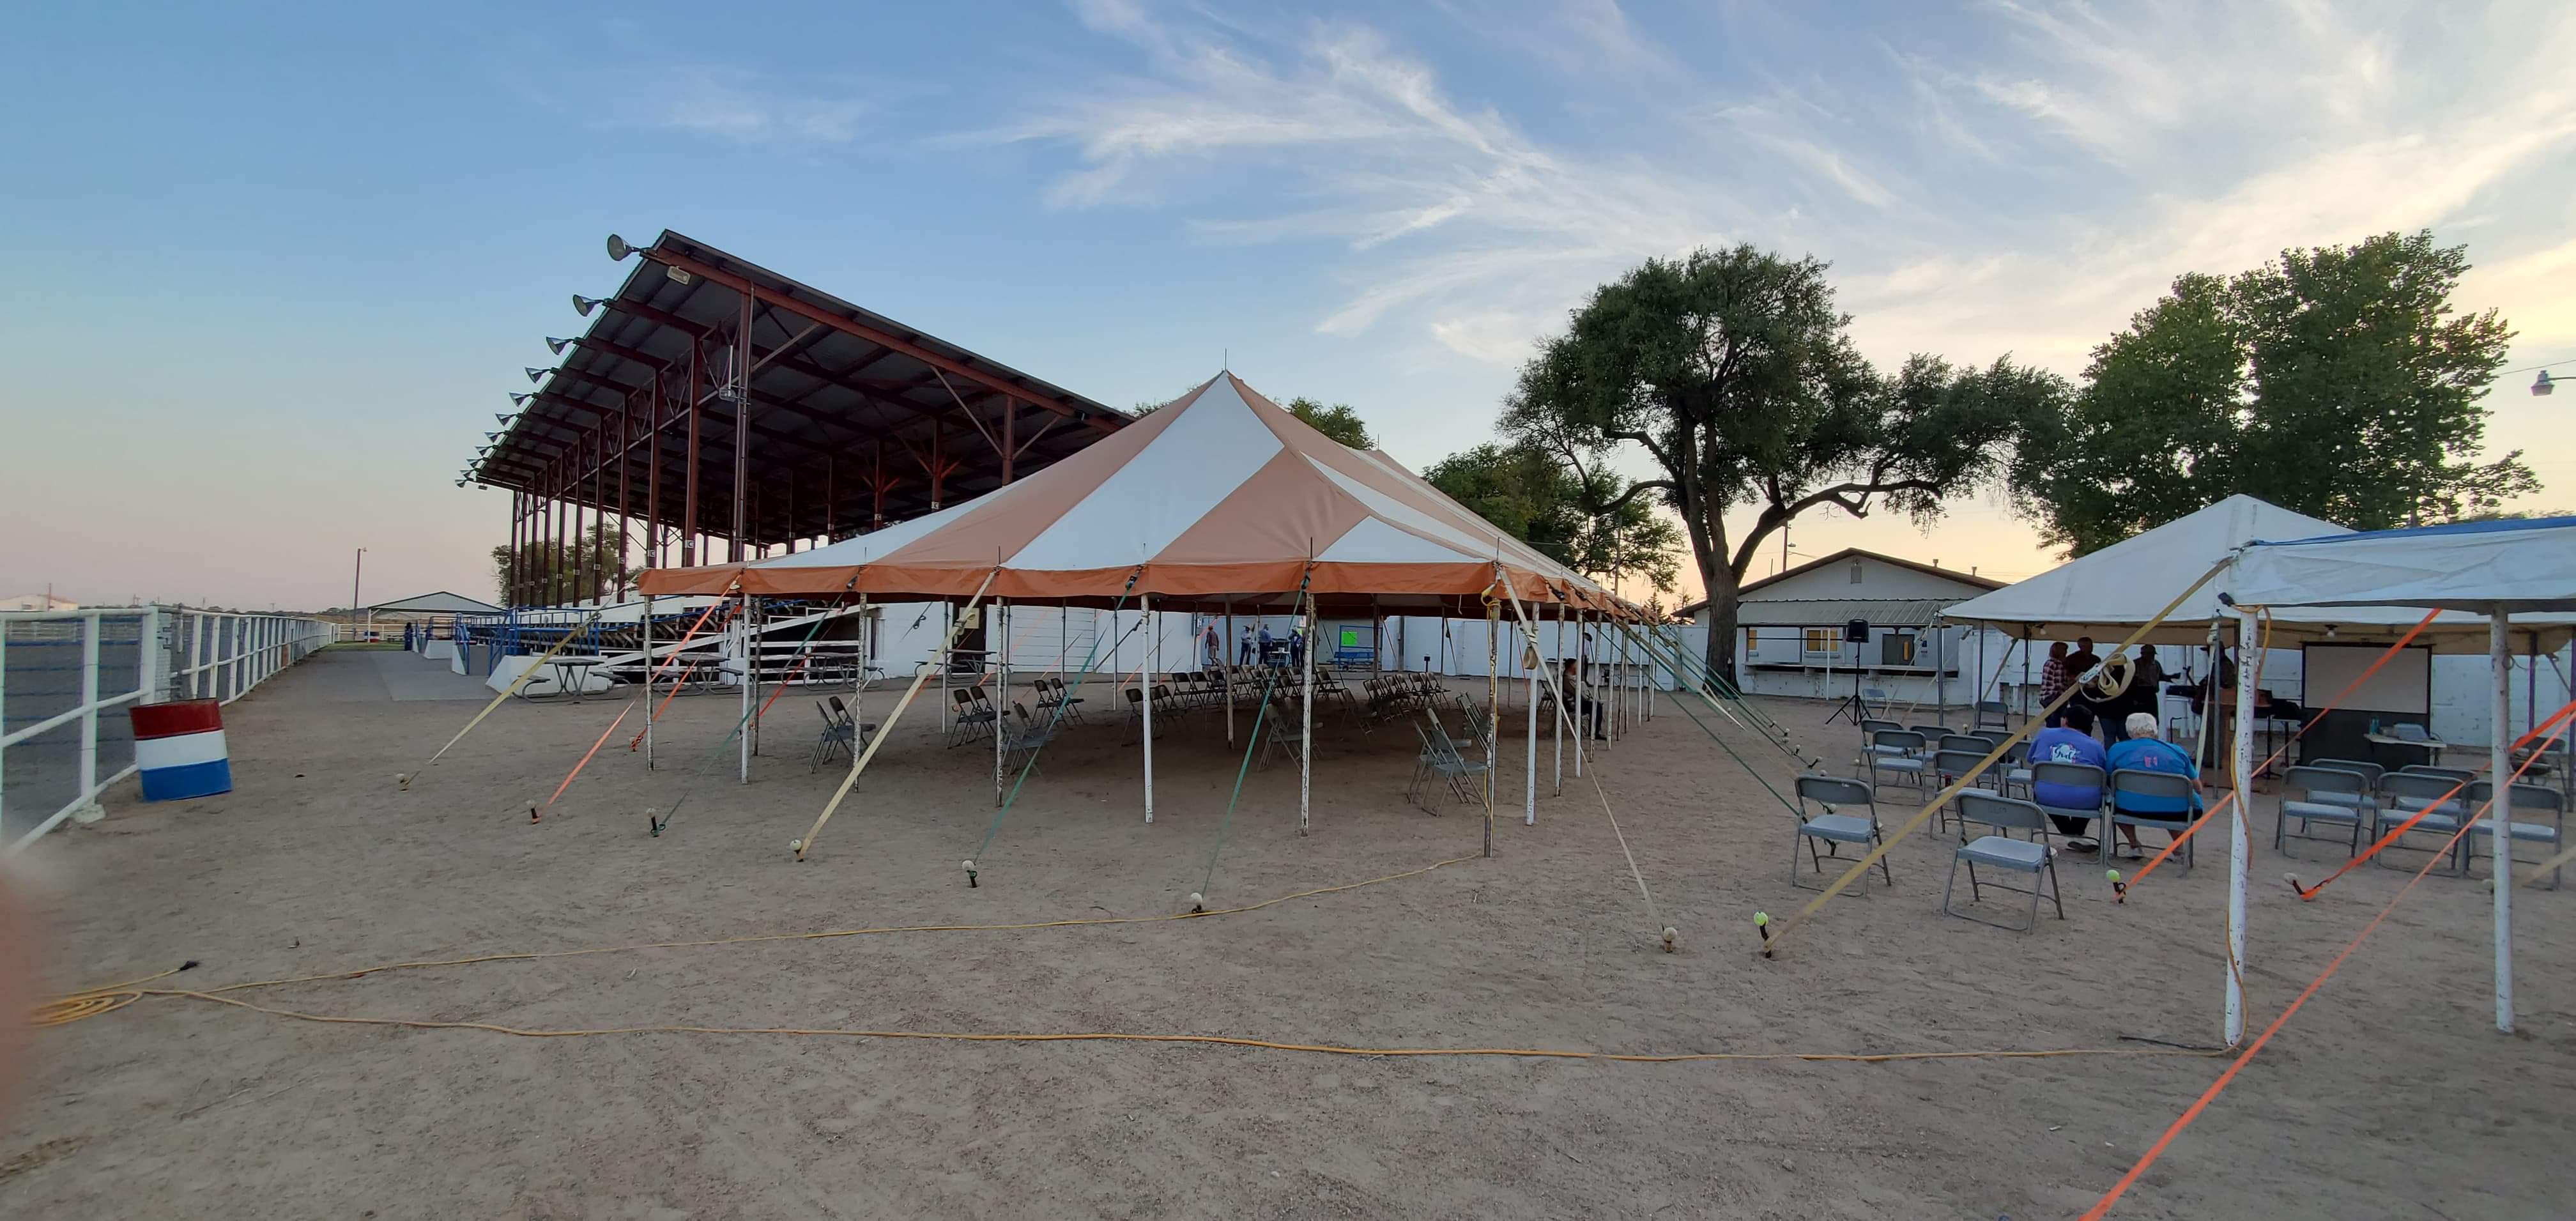 Cowboy Camp Tent Revival seconews.org 